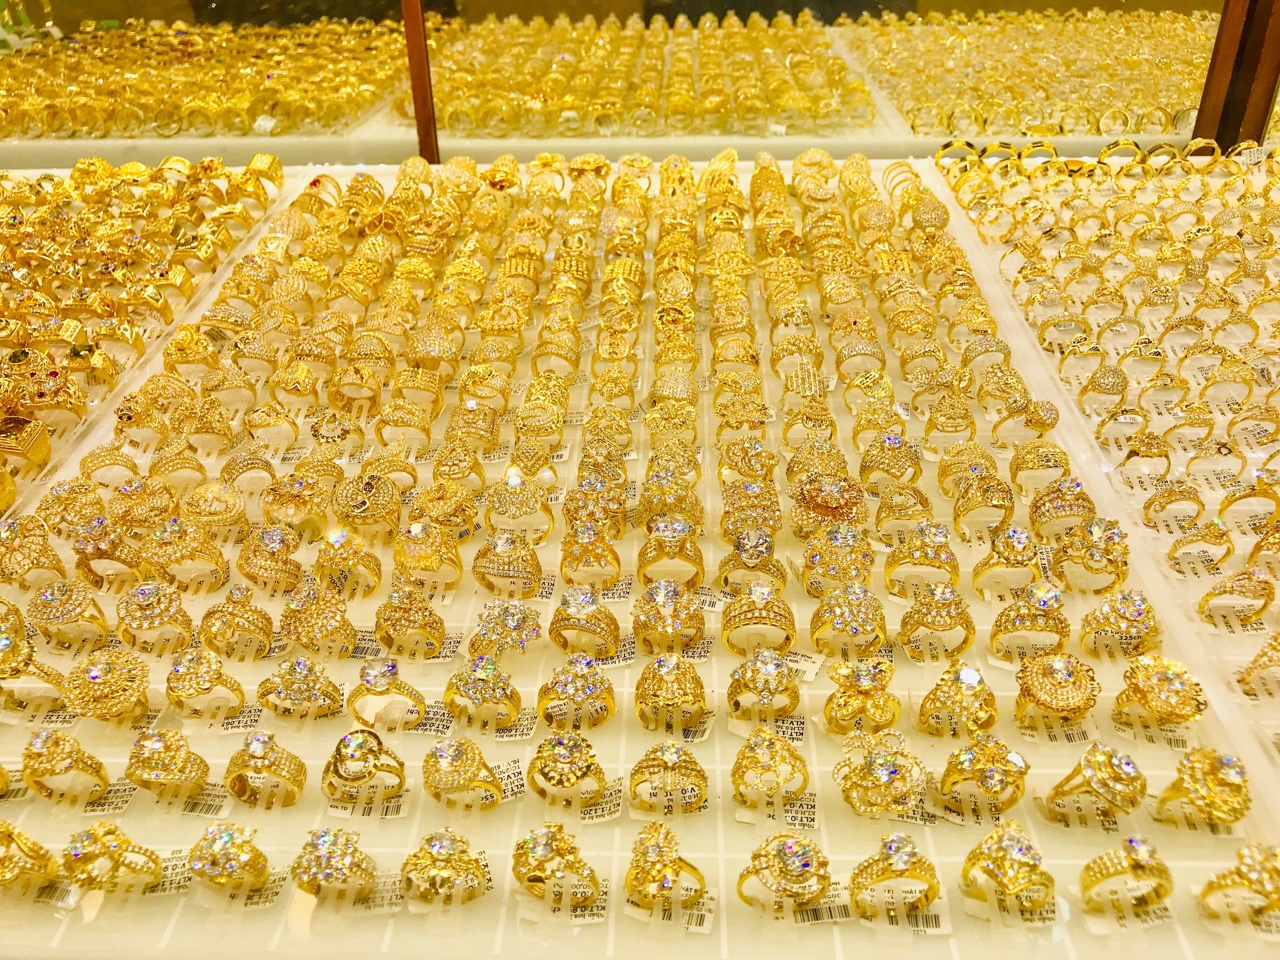 Giá vàng trong nước gần 50 triệu đồng/lượng - Ảnh minh họa